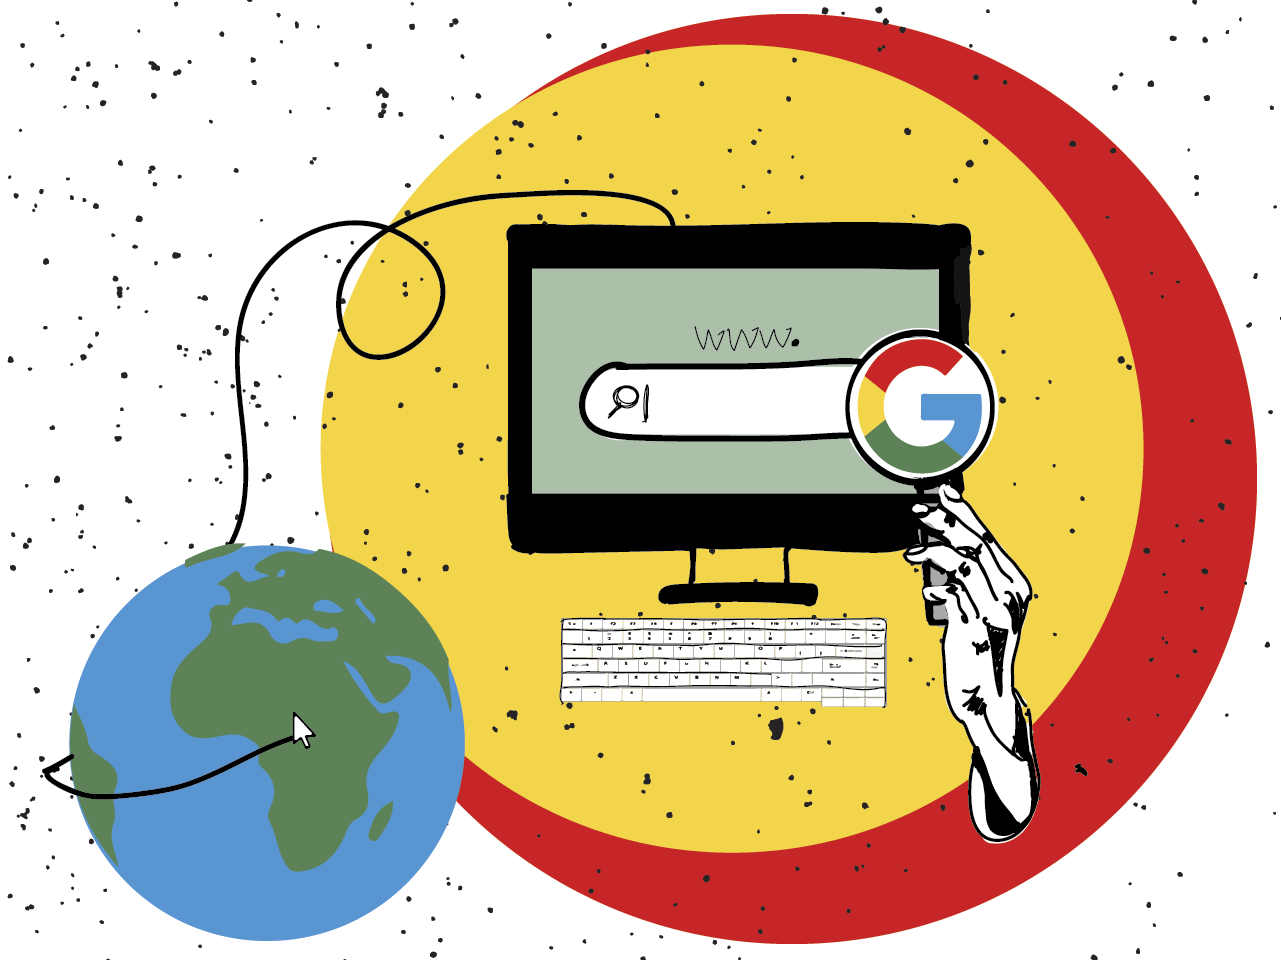 O Google quer mais conteúdo autêntico nos resultados de seu buscador. Talvez seja impossível